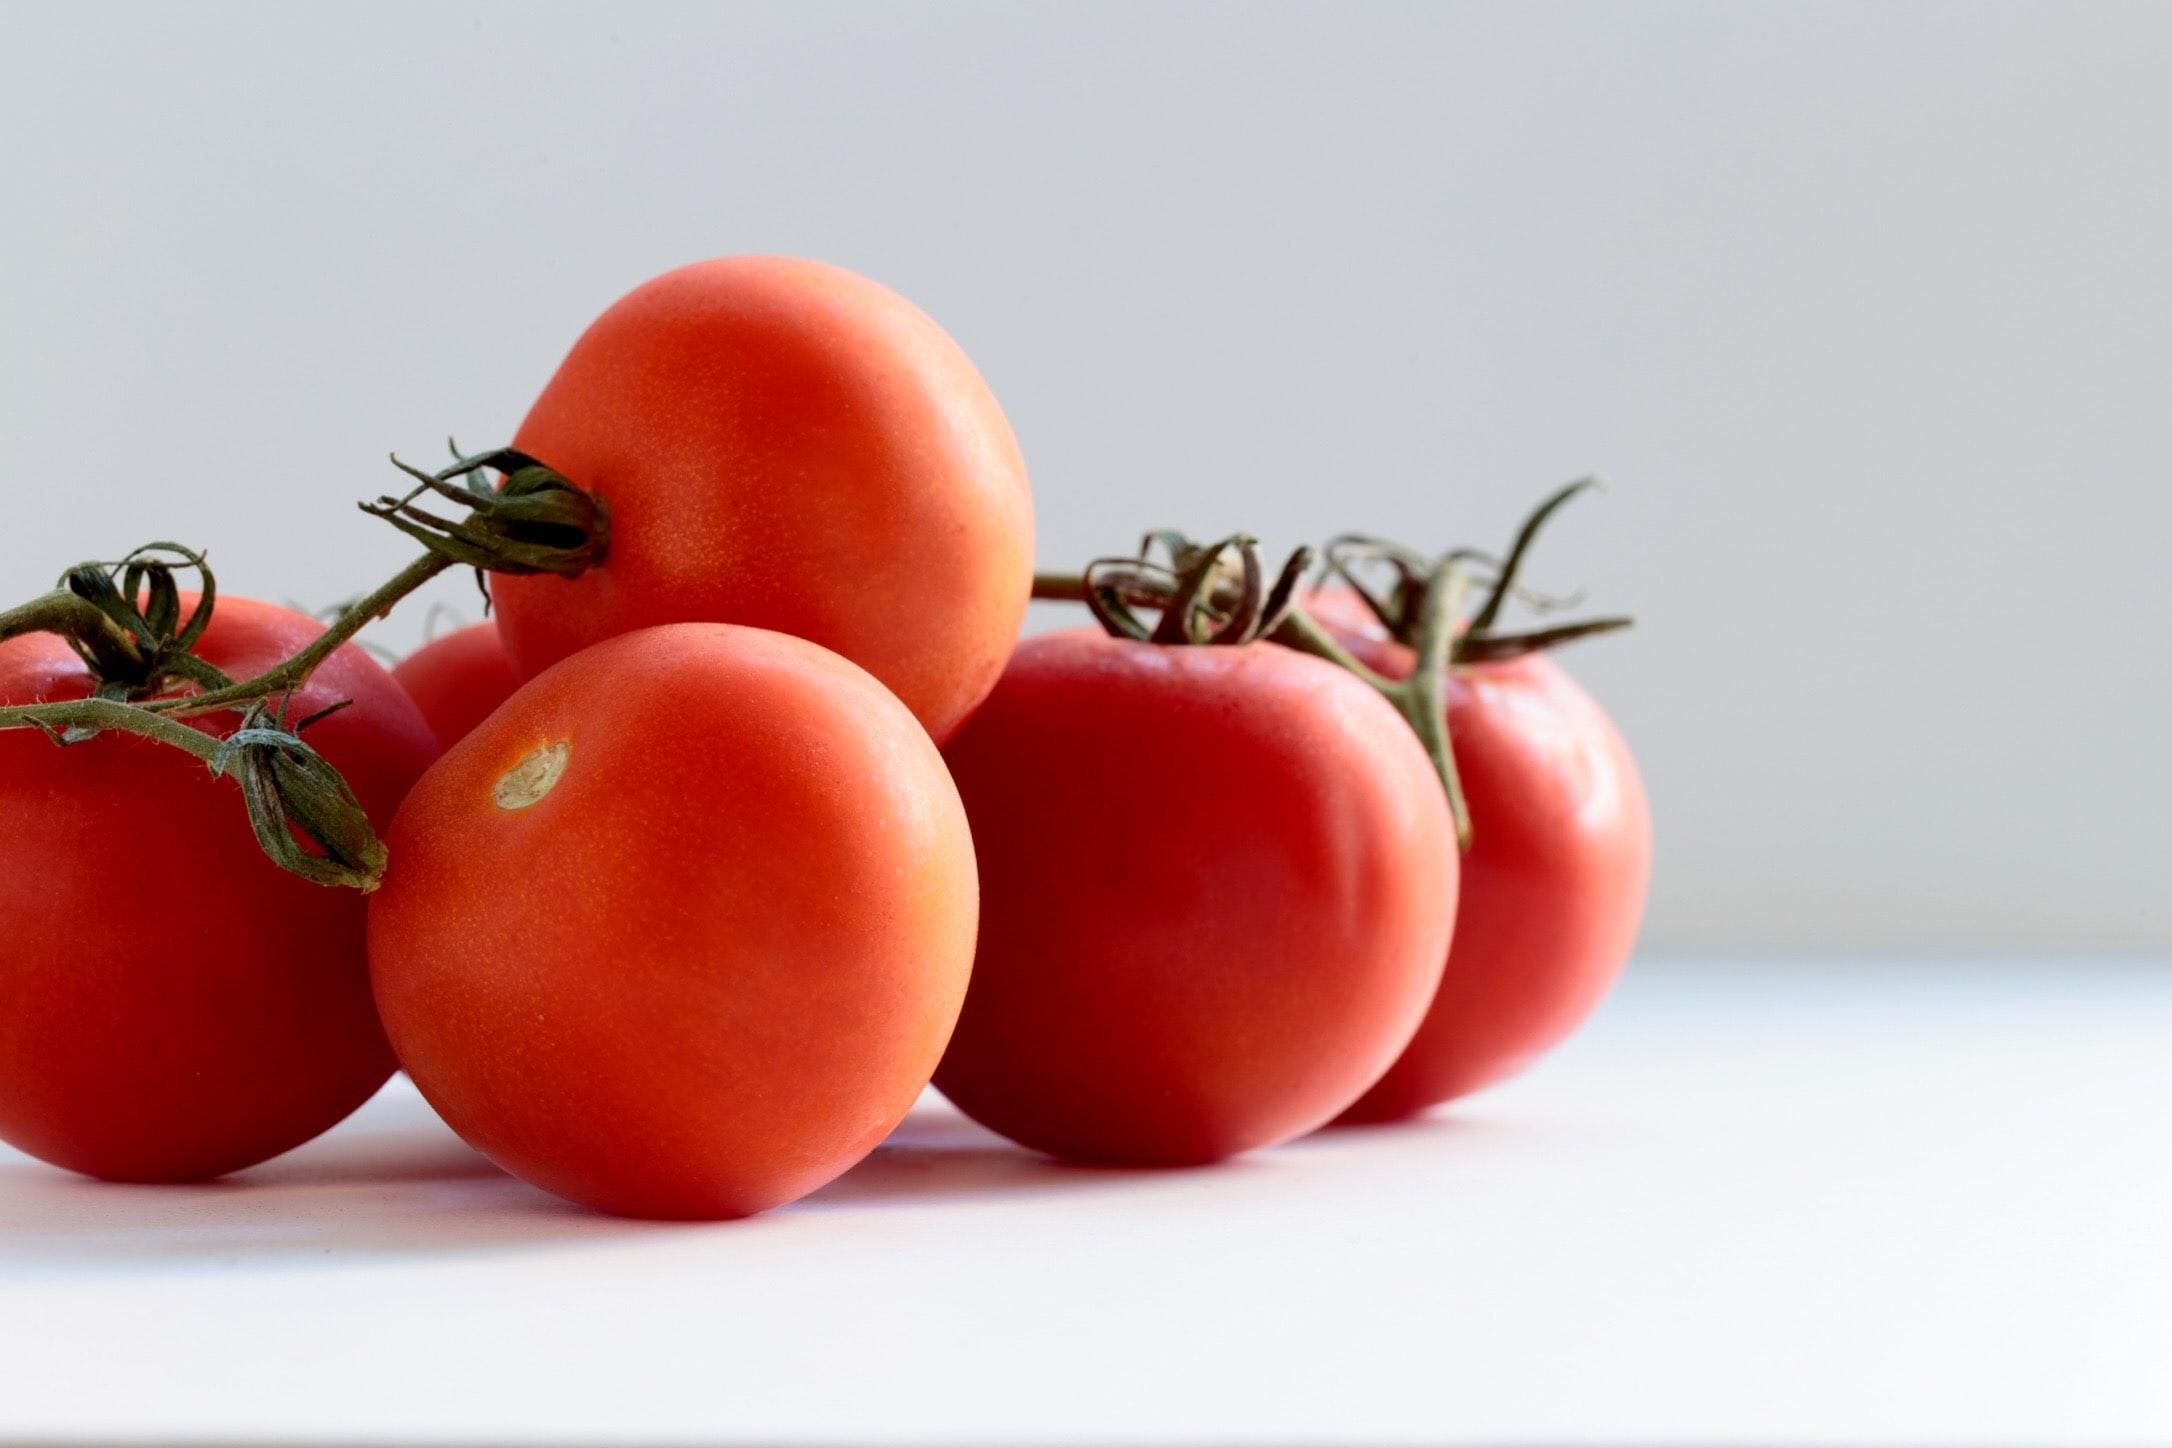 Як легко очистити помідор від шкірки: перевірені лайфхаки - Ідеї